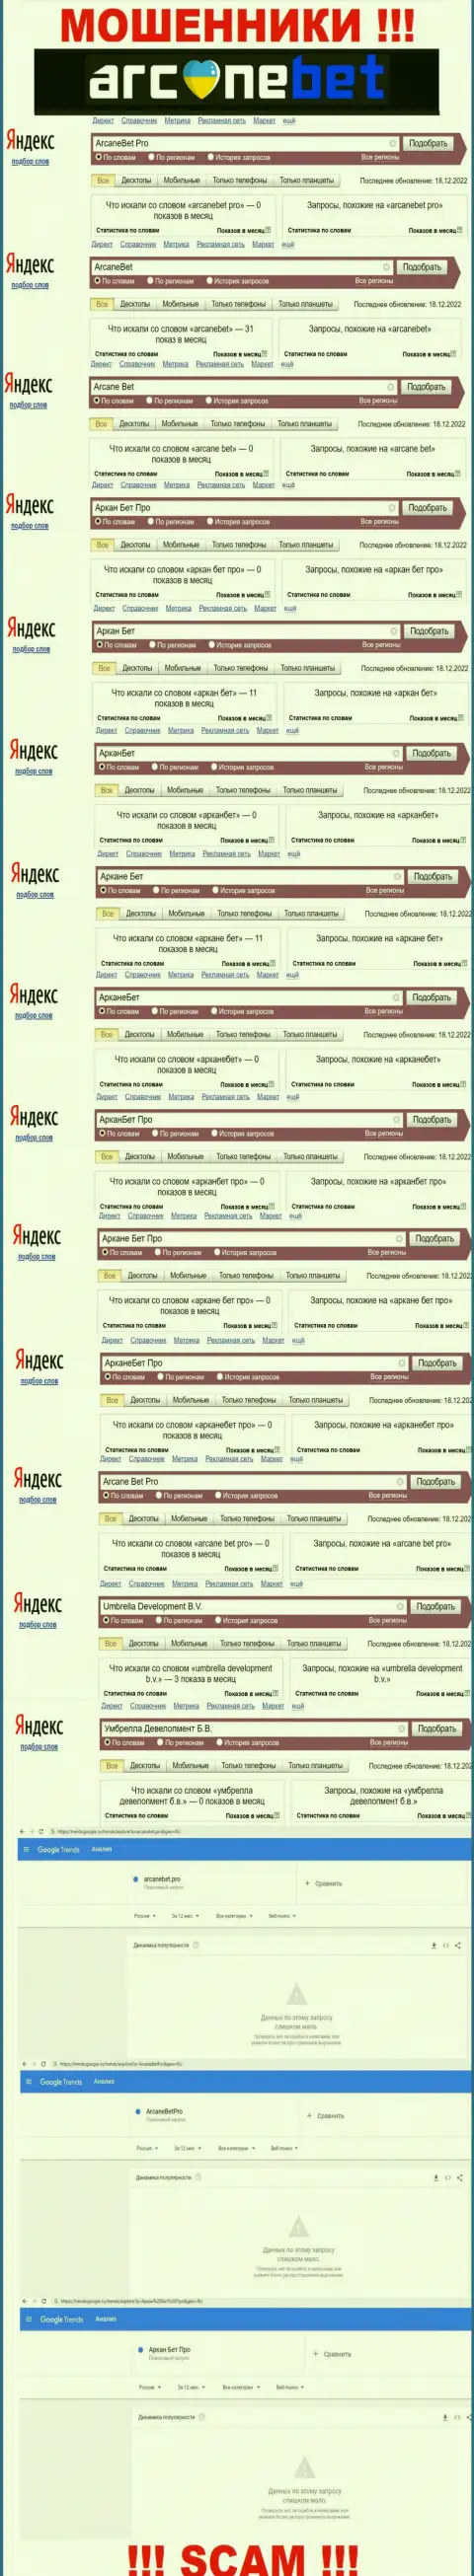 Количество брендовых поисковых запросов по internet мошенникам Аркане Бет